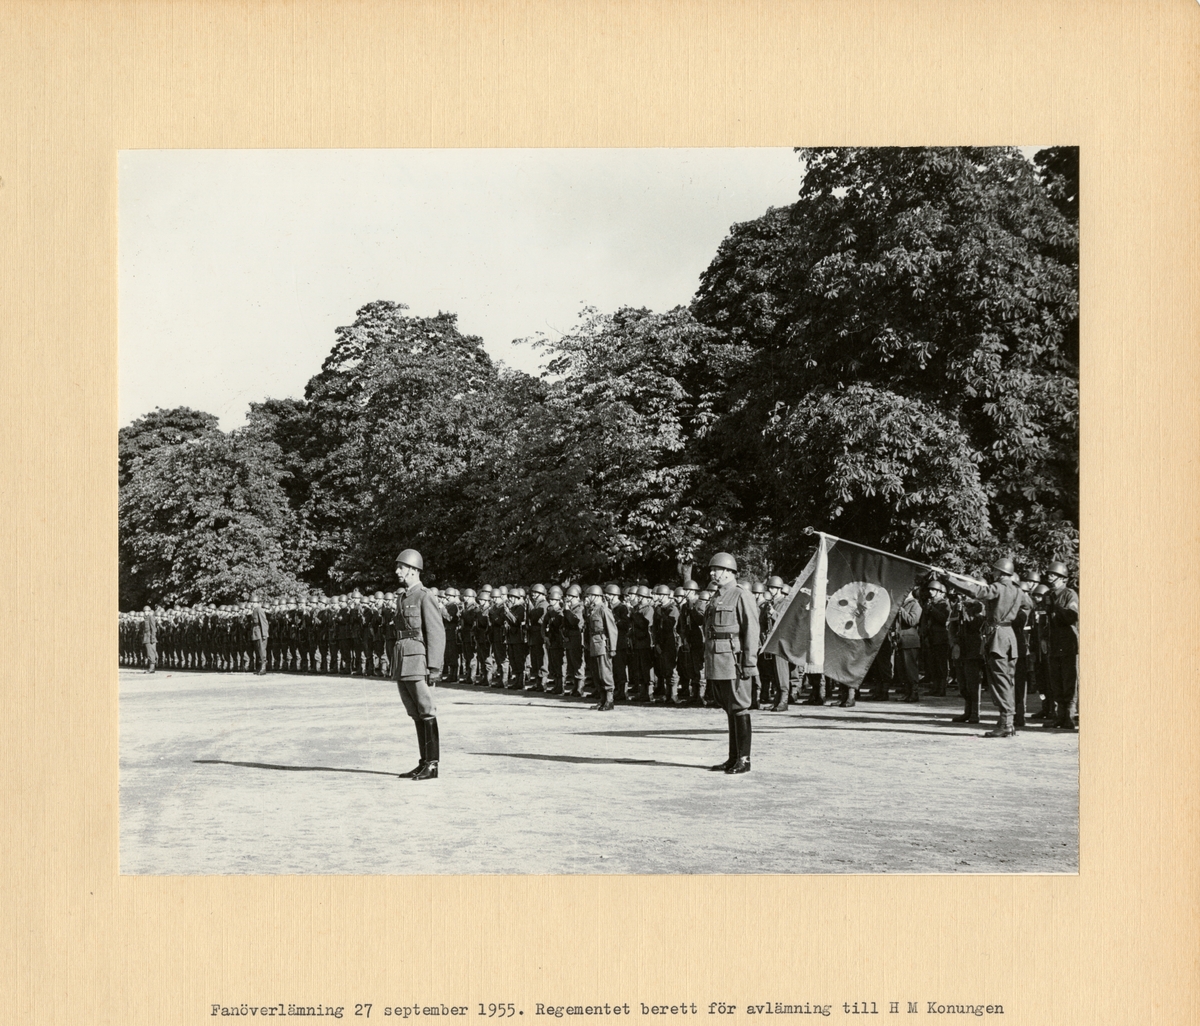 Text i fotoalbum: "Fanöverlämning 27 september 1955. Regementet berett för avlämning till H M Konungen"